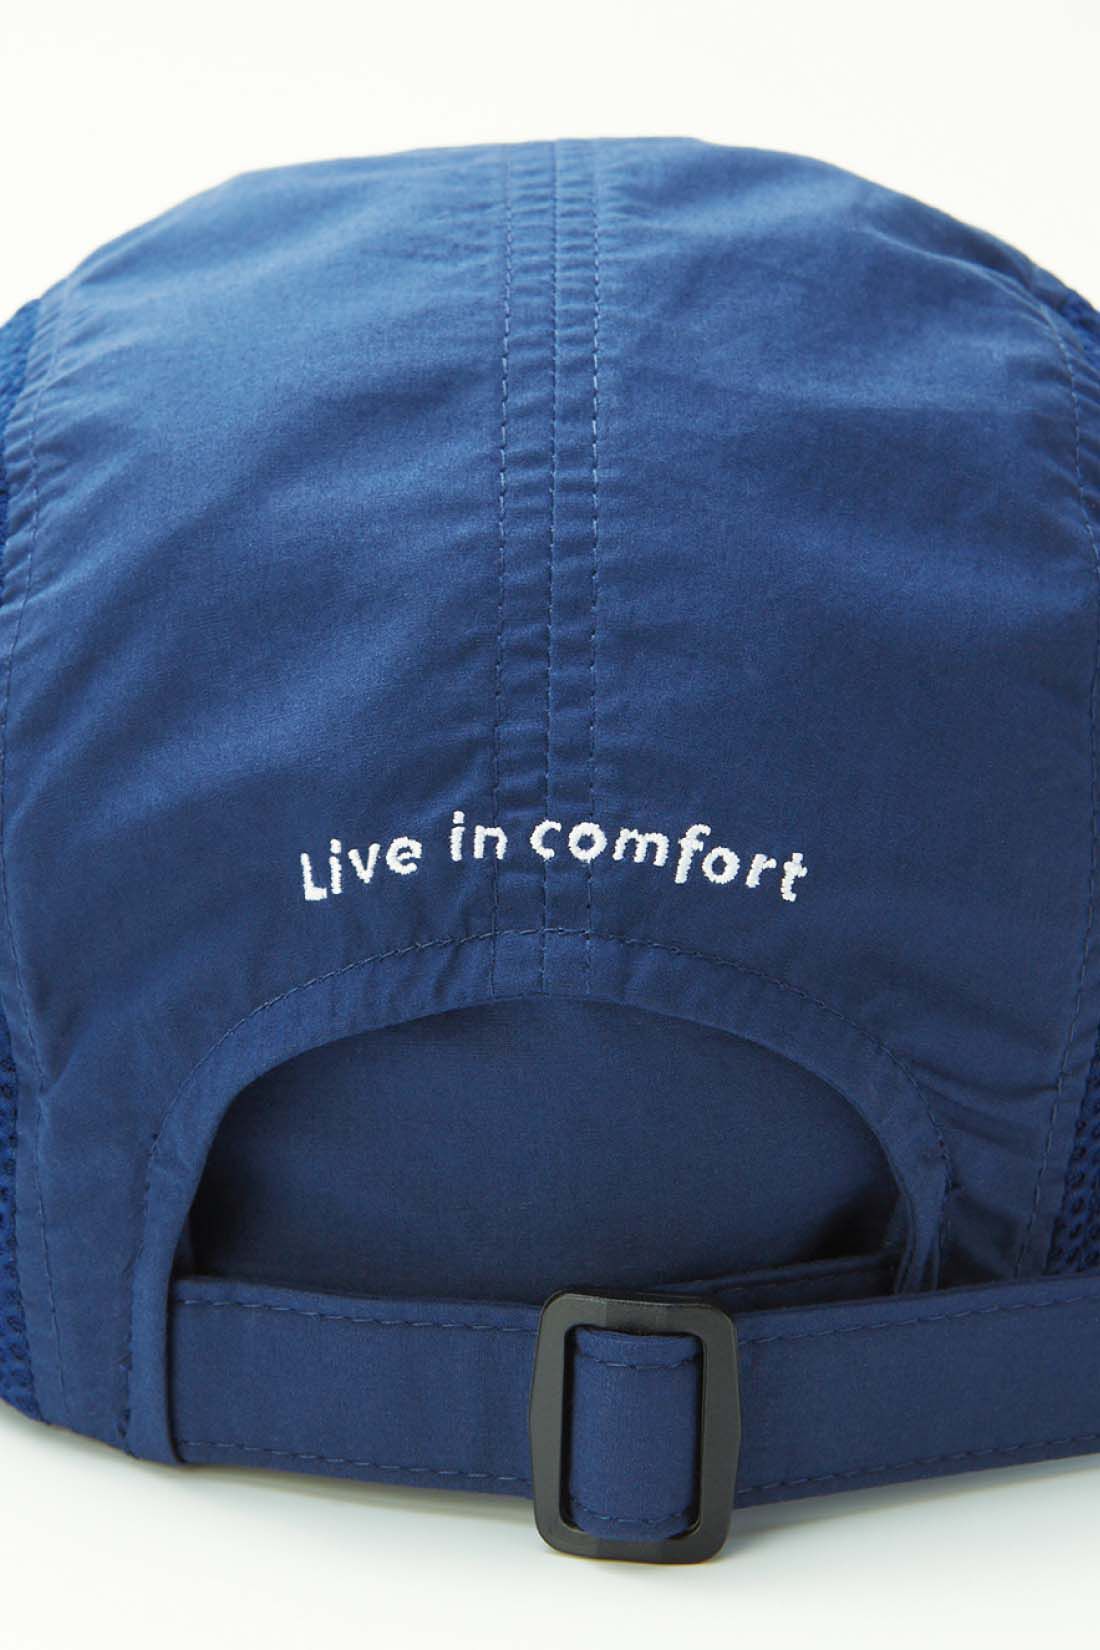 Live in  comfort|リブ イン コンフォート　丸洗いできる 涼やかUVカットメッシュキャップ〈ネイビー〉|後ろのアジャスターでサイズ感を調節可能。